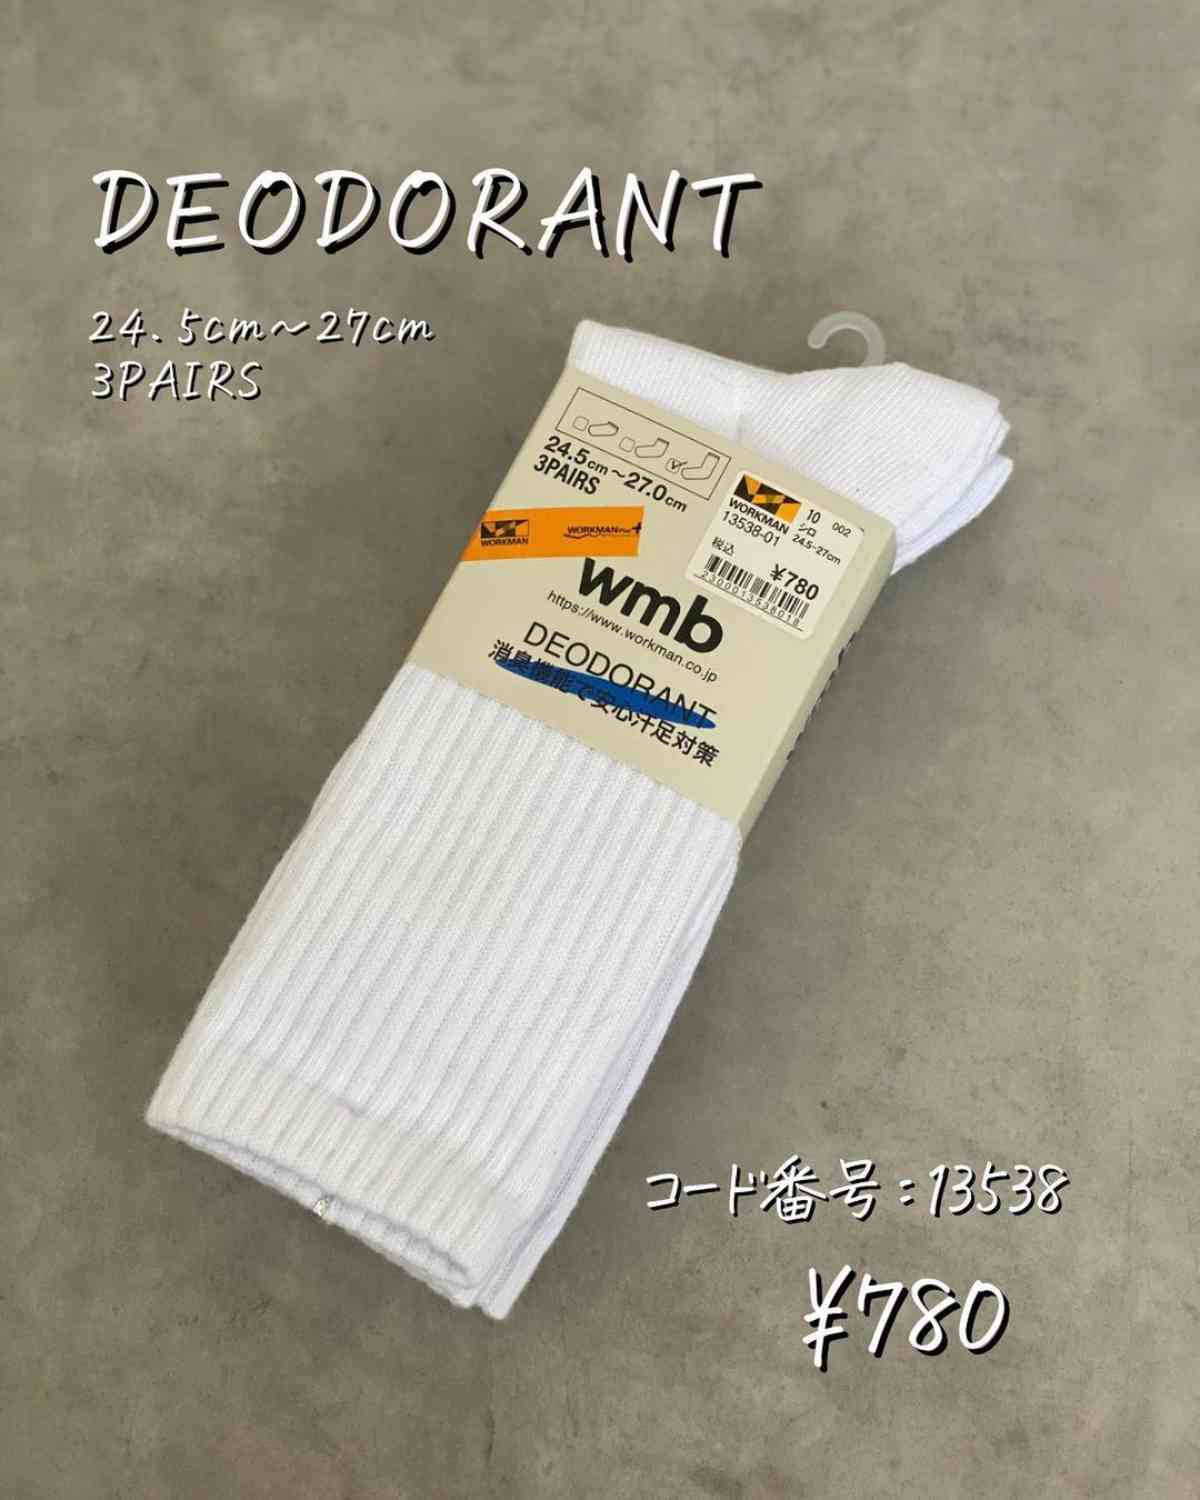 イチオシポイント1：ワークマン「DEODORANT」はロング丈の白い靴下